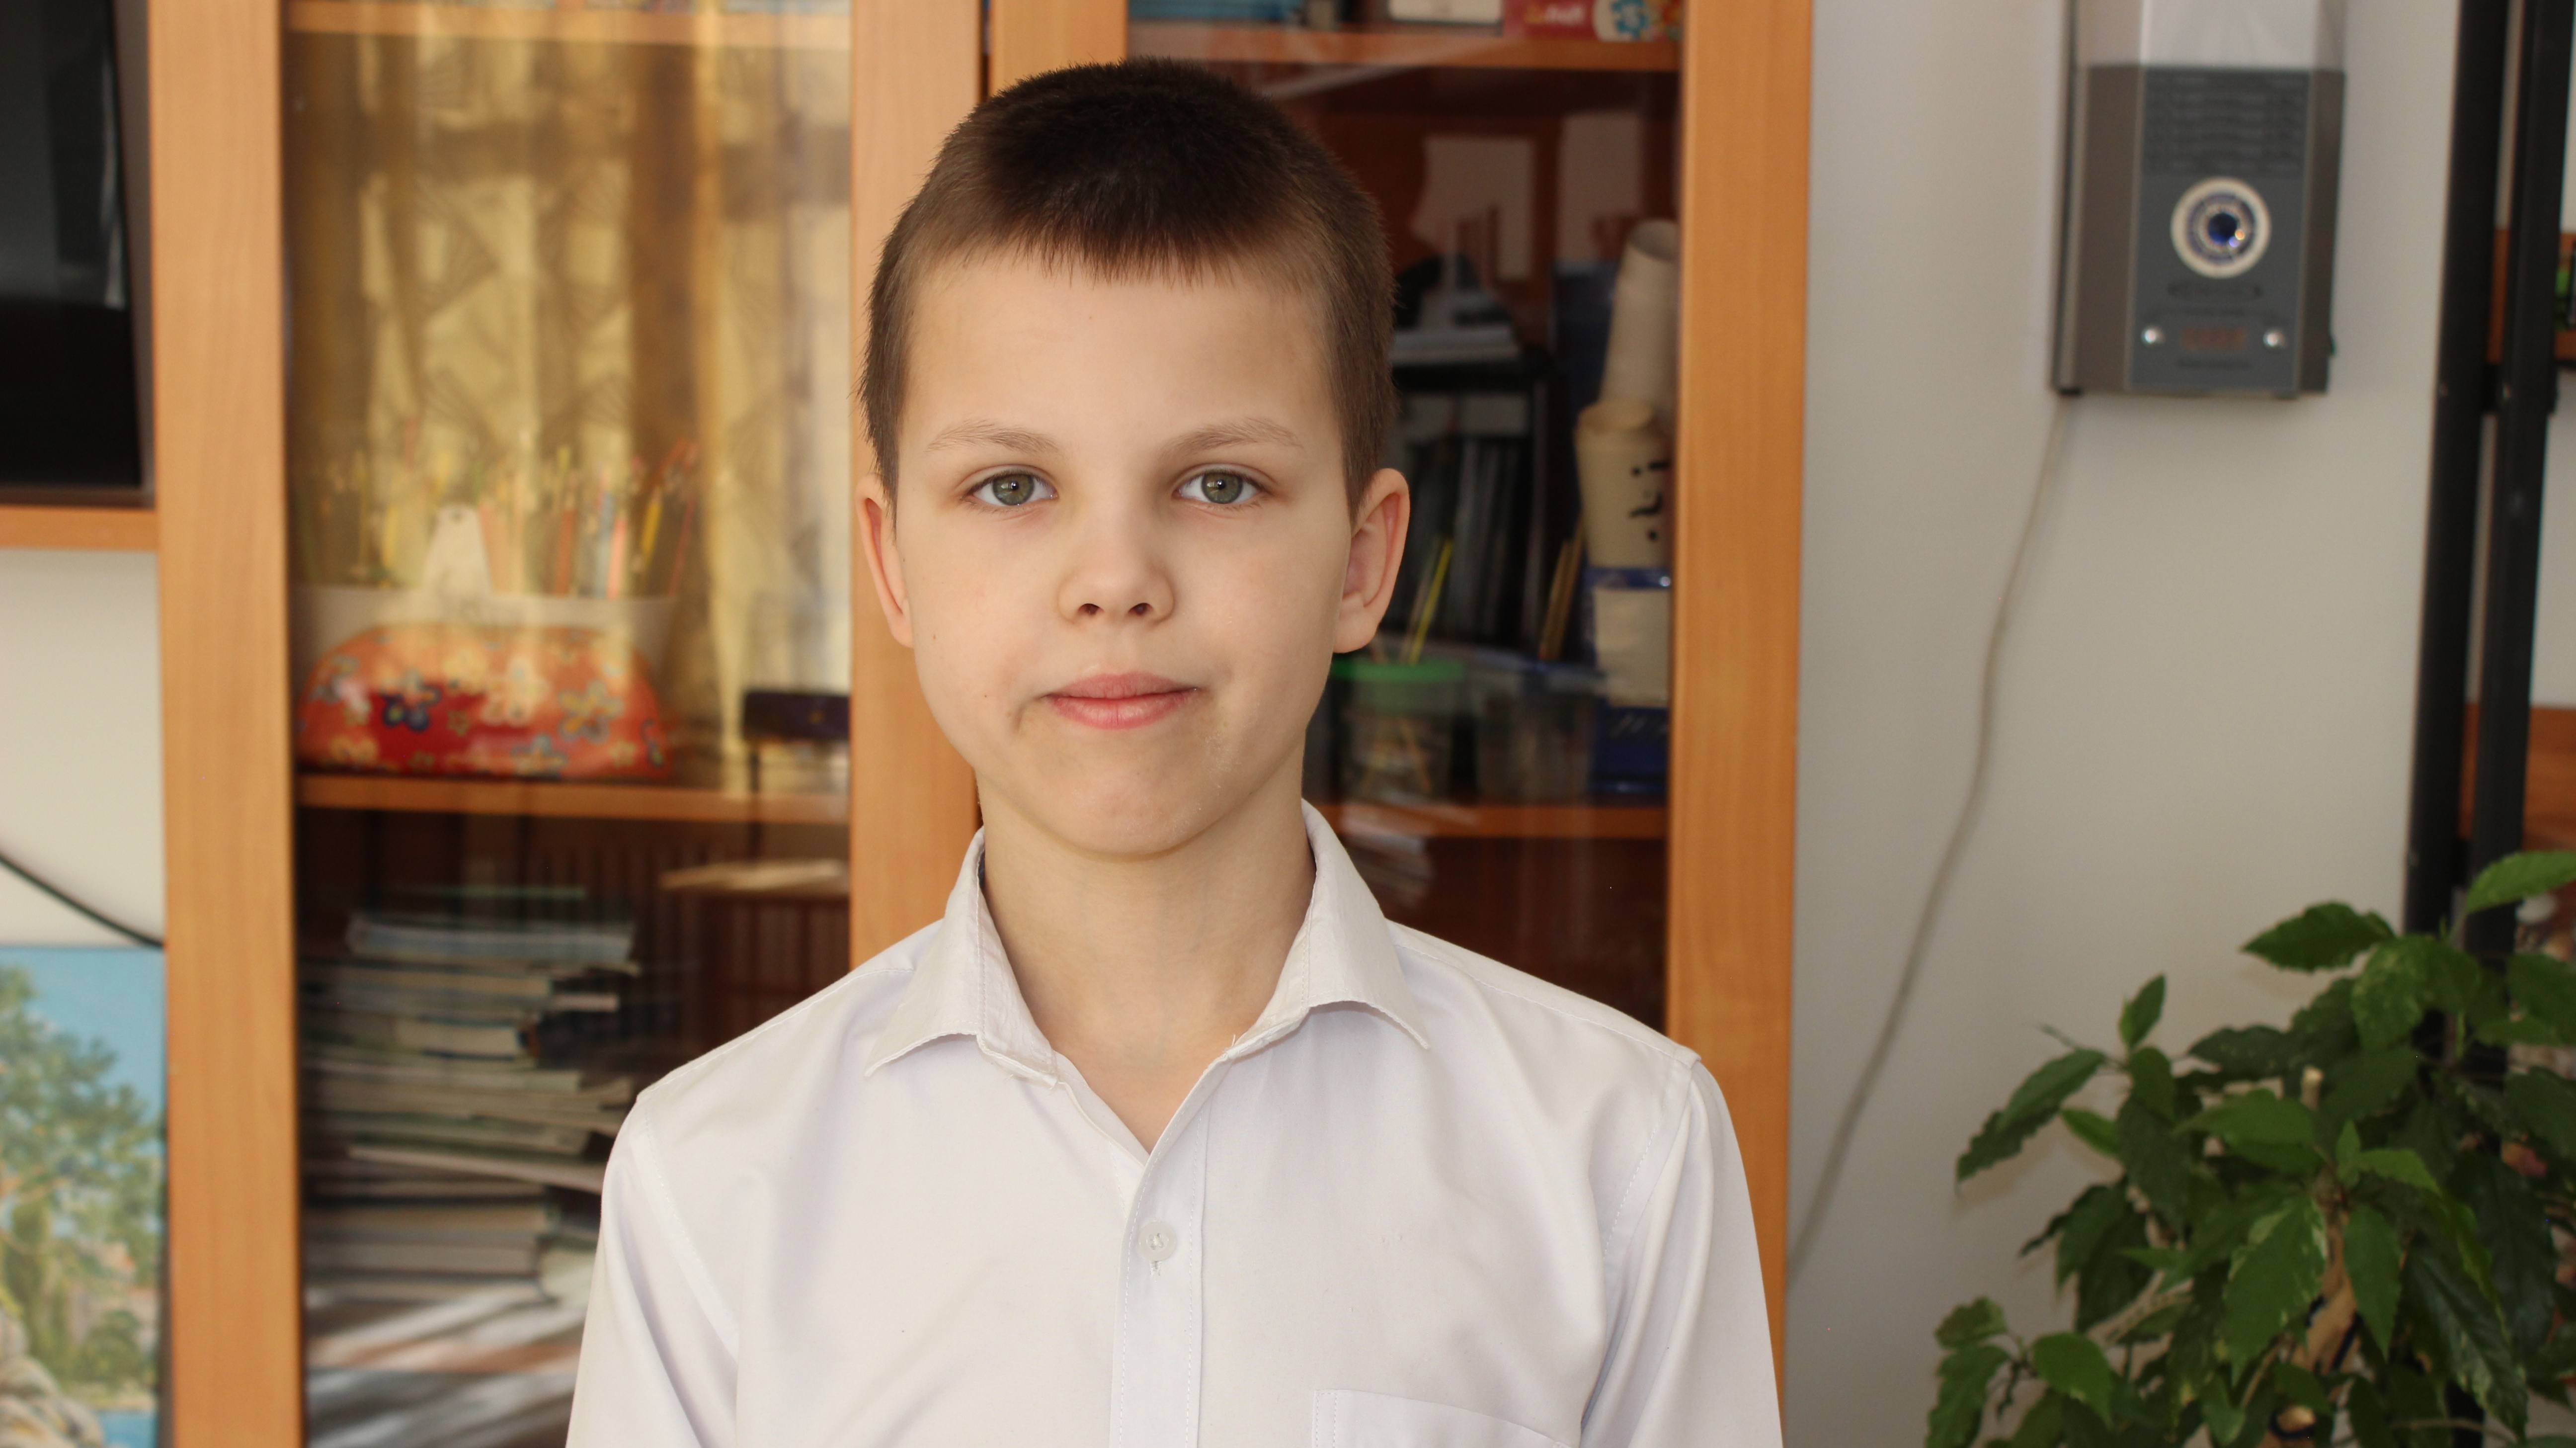 Сергей, 10 лет (видео-анкета)